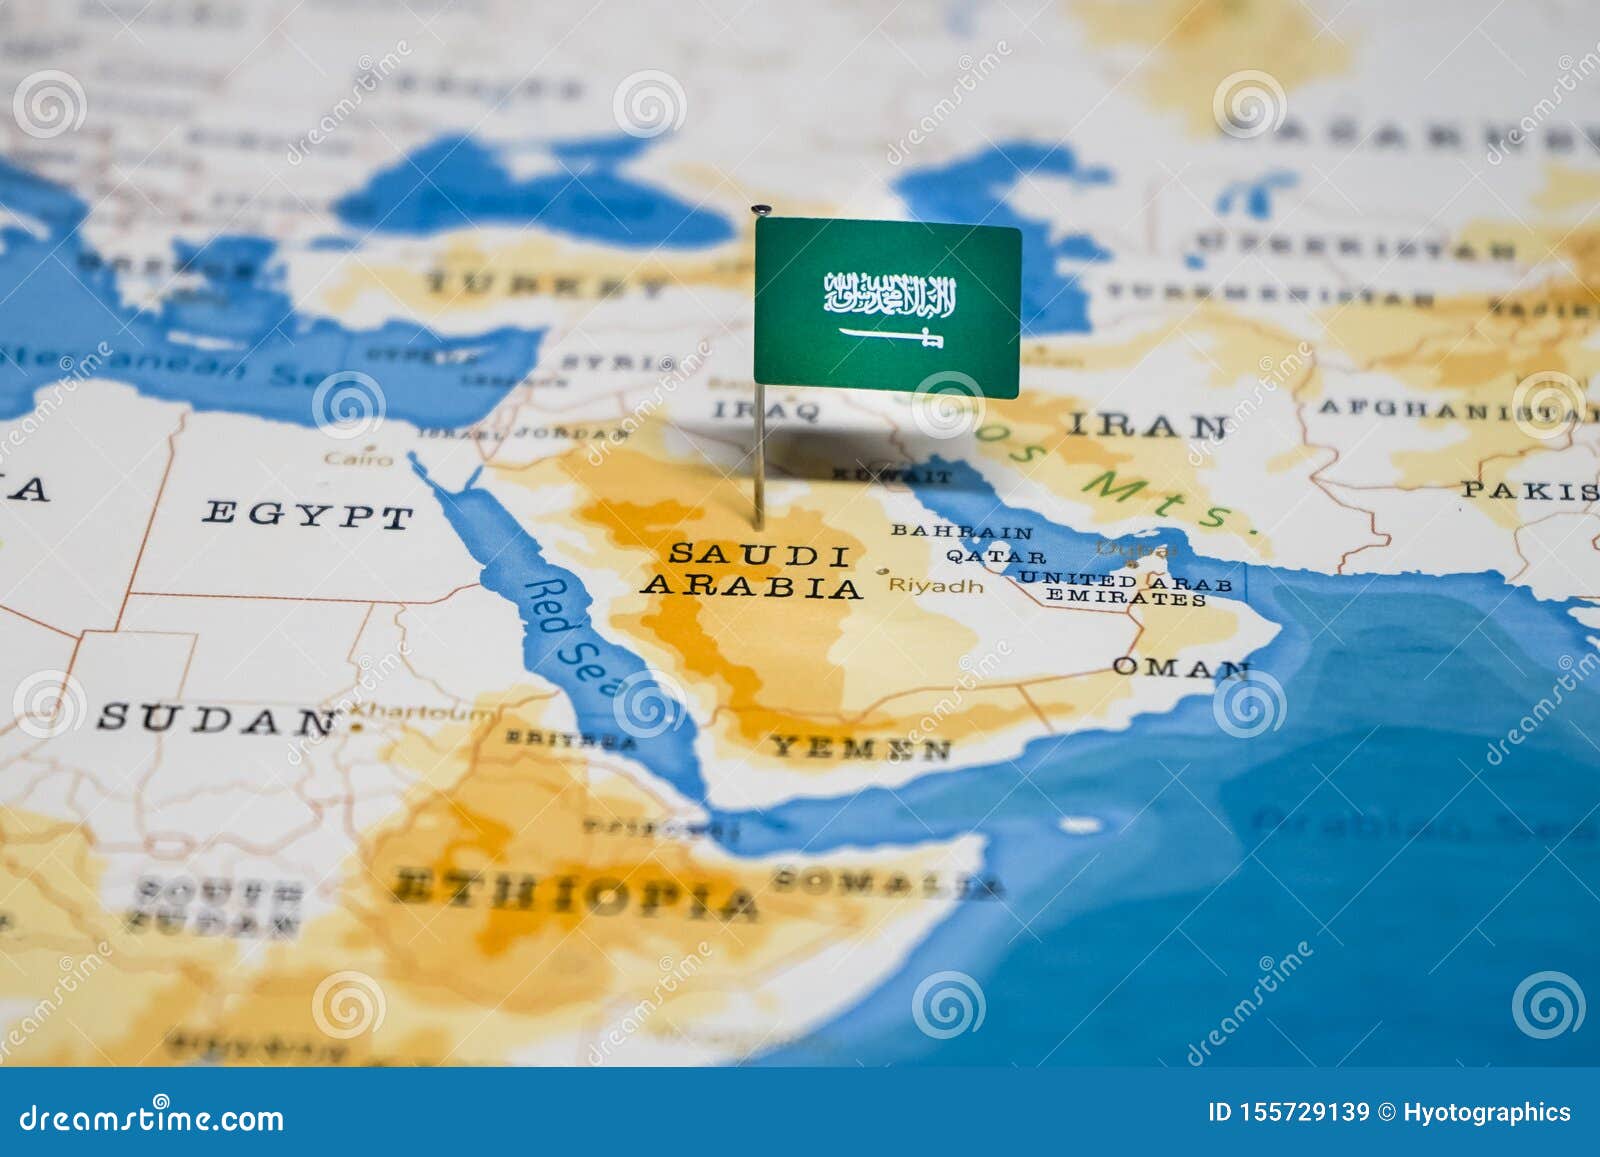 Саудовская аравия какой континент. Саудовская Аравия на карте с флагом. Саудовская Аравия на карте. Саудовская Аравия на карте мире.